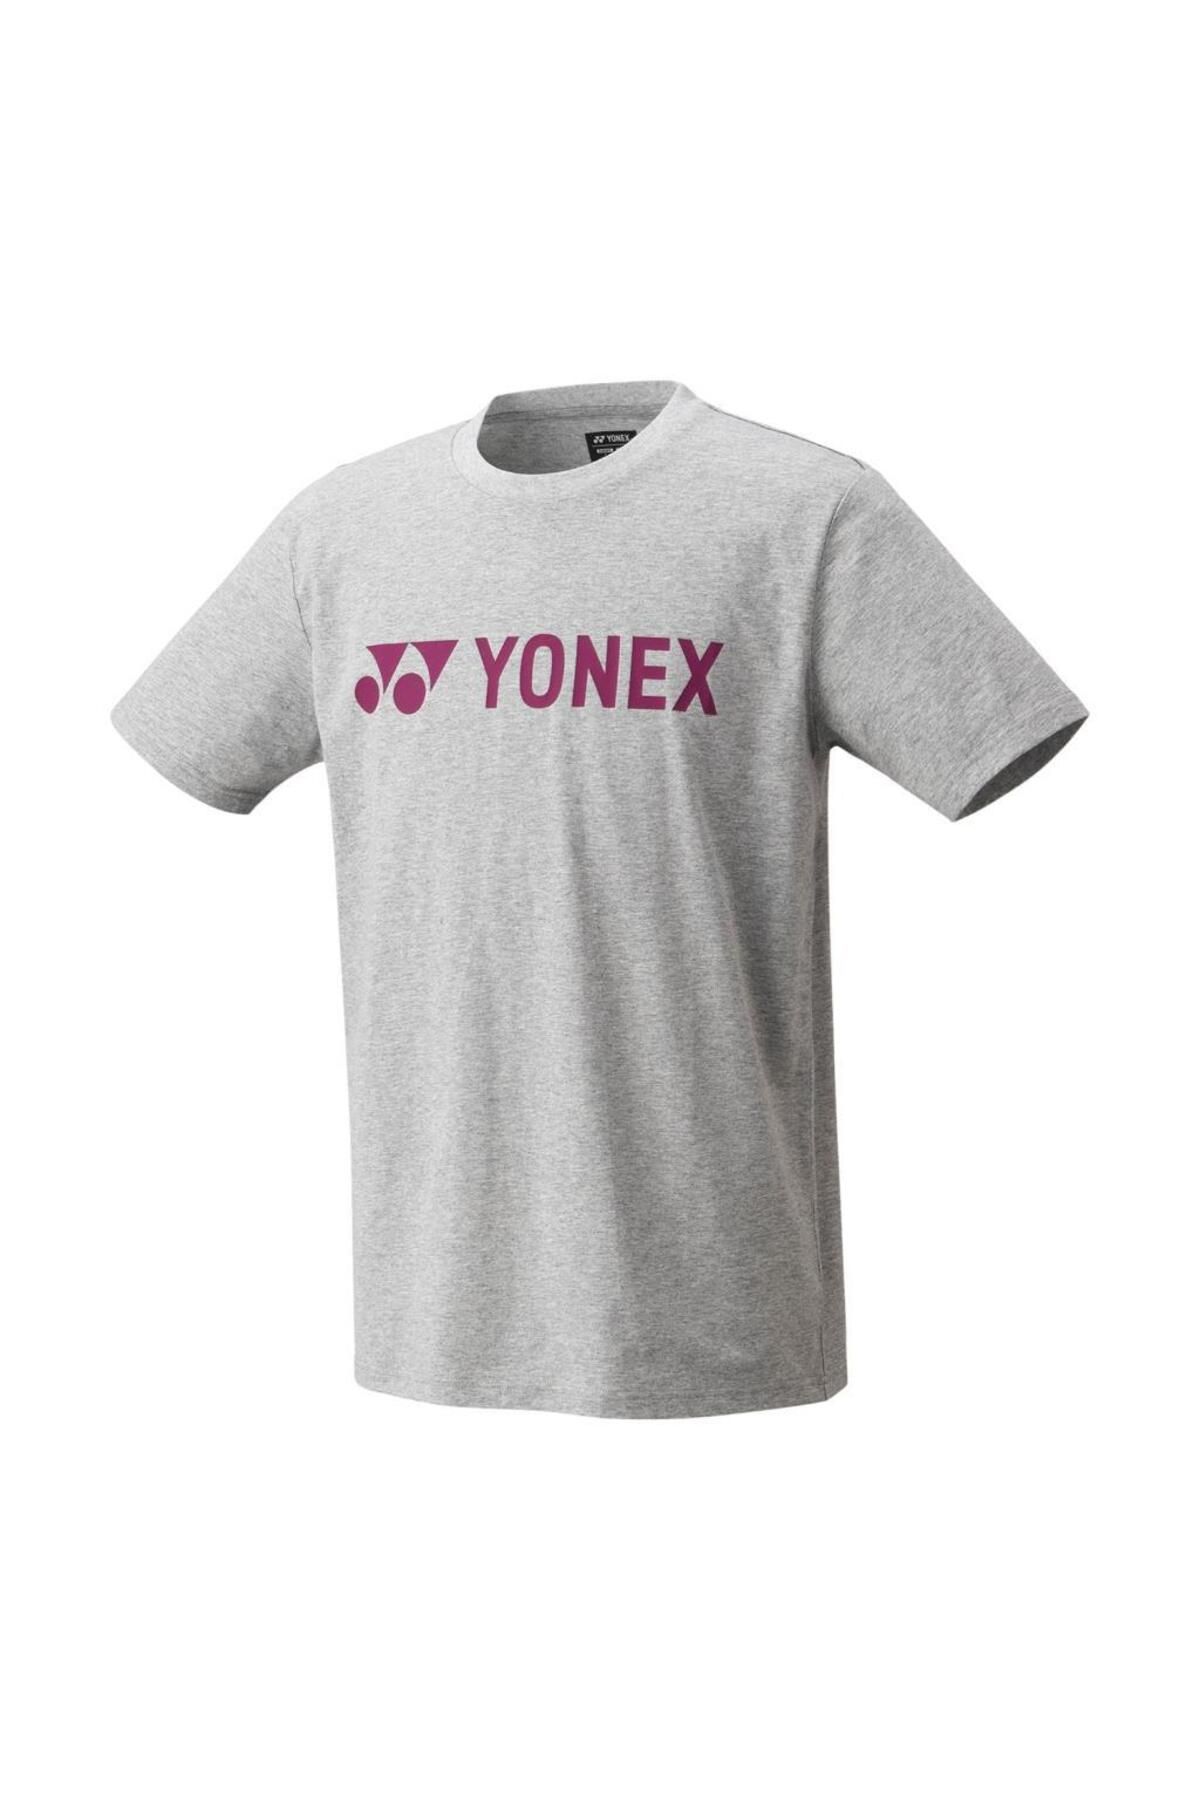 Yonex Tshirt Gri Erkek 16680EX